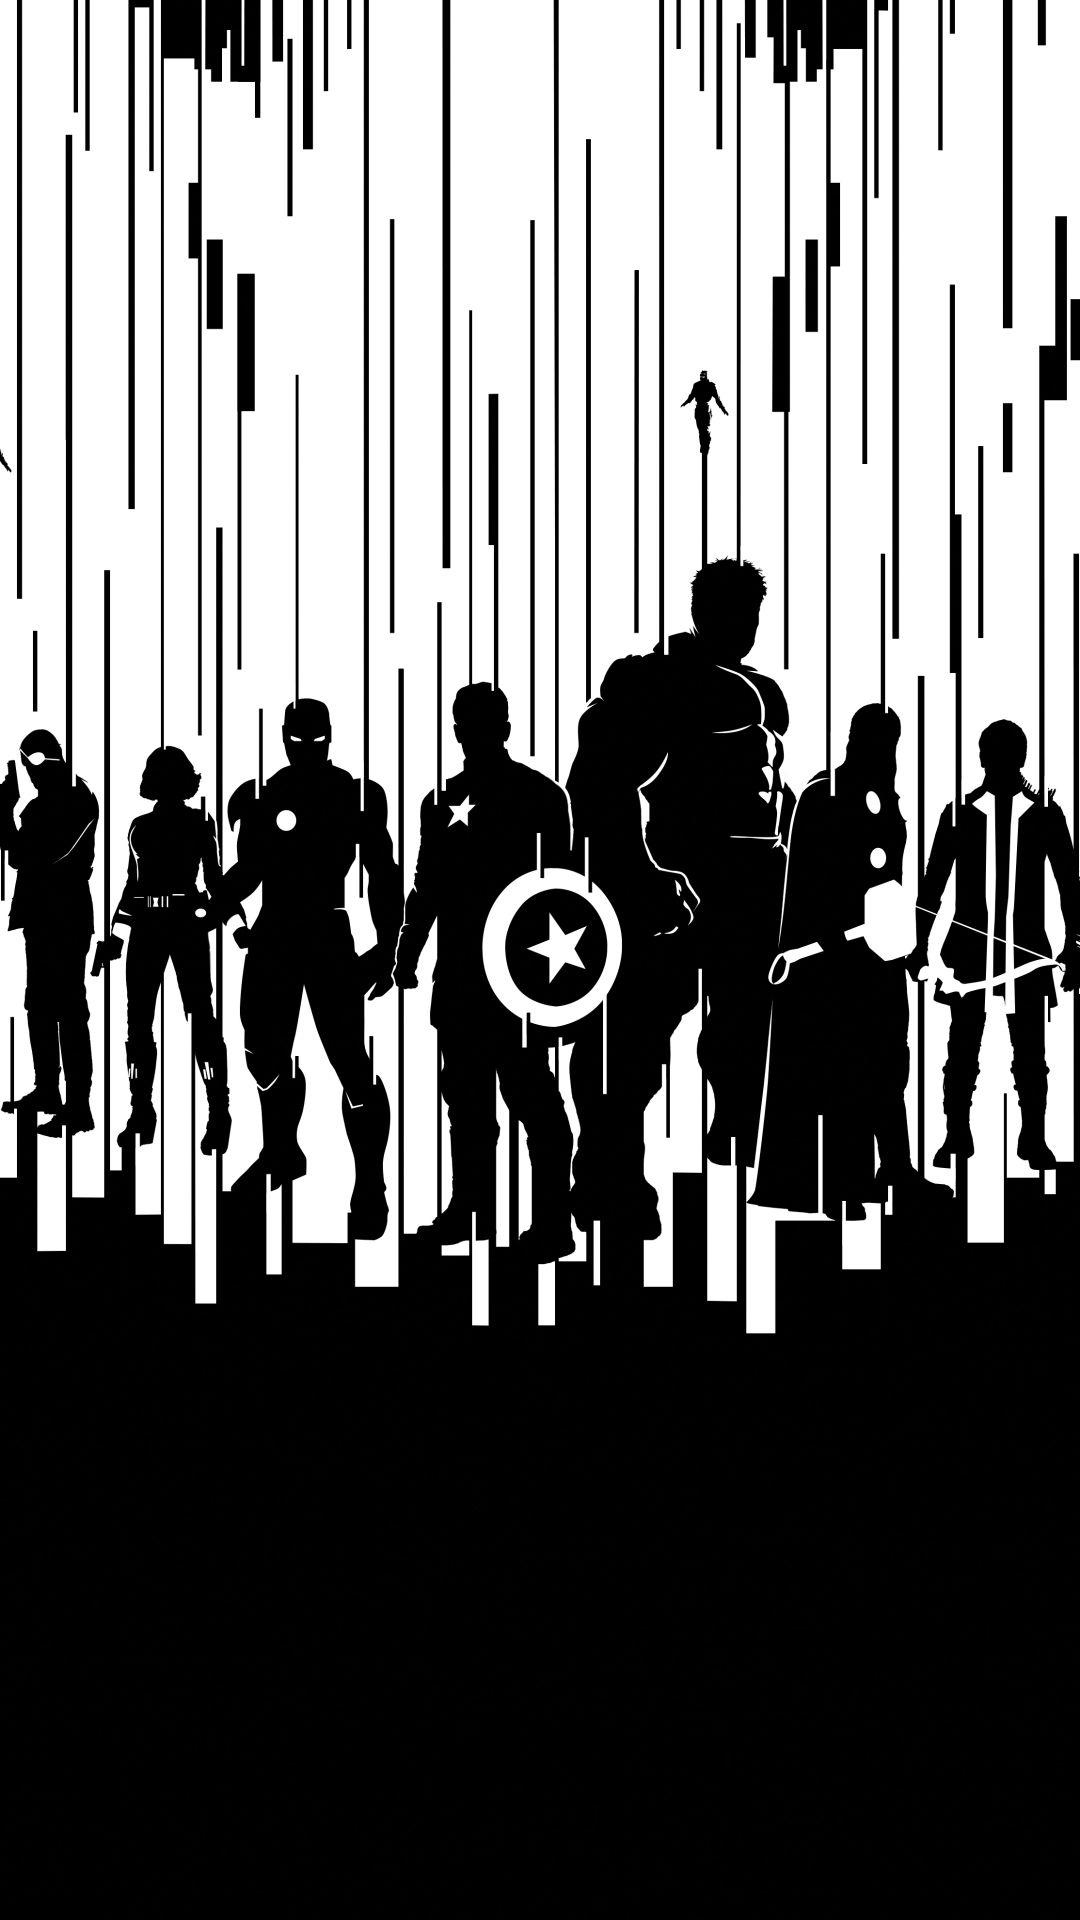 Avengers Assemble. Avengers wallpaper, Marvel background, Marvel artwork